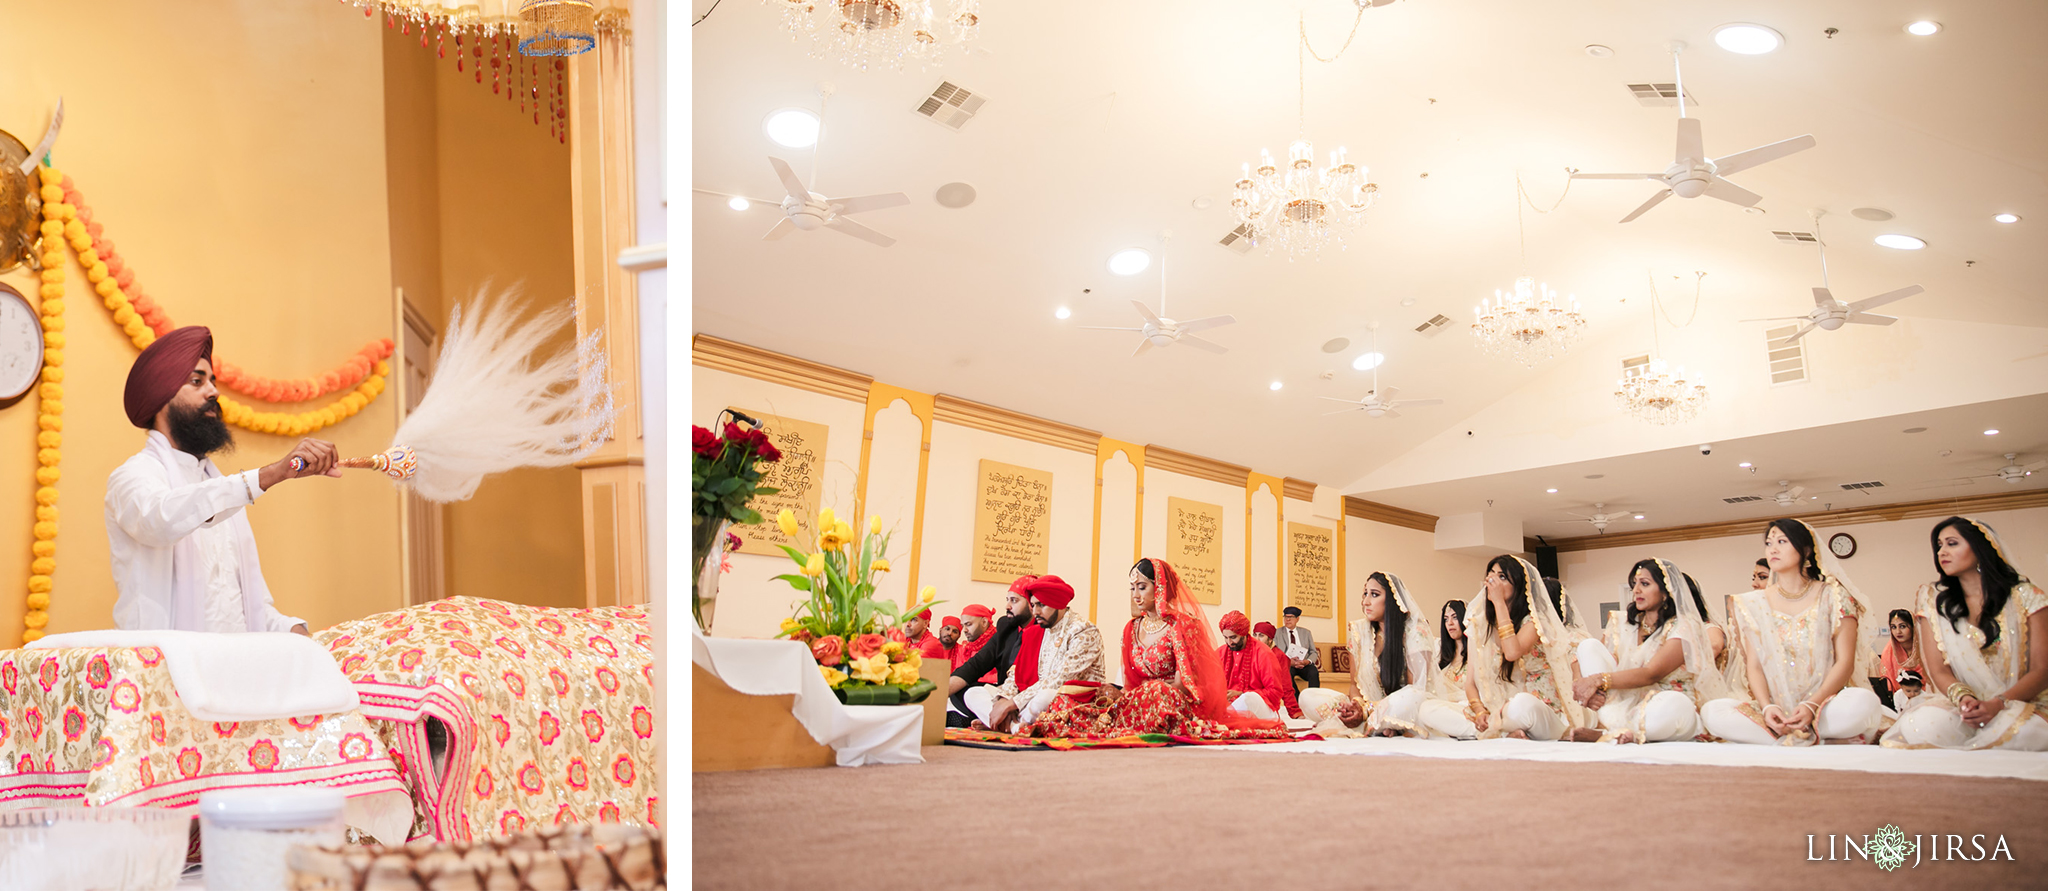 13 Hotel Irvine Punjabi Hindu Indian Wedding Photography